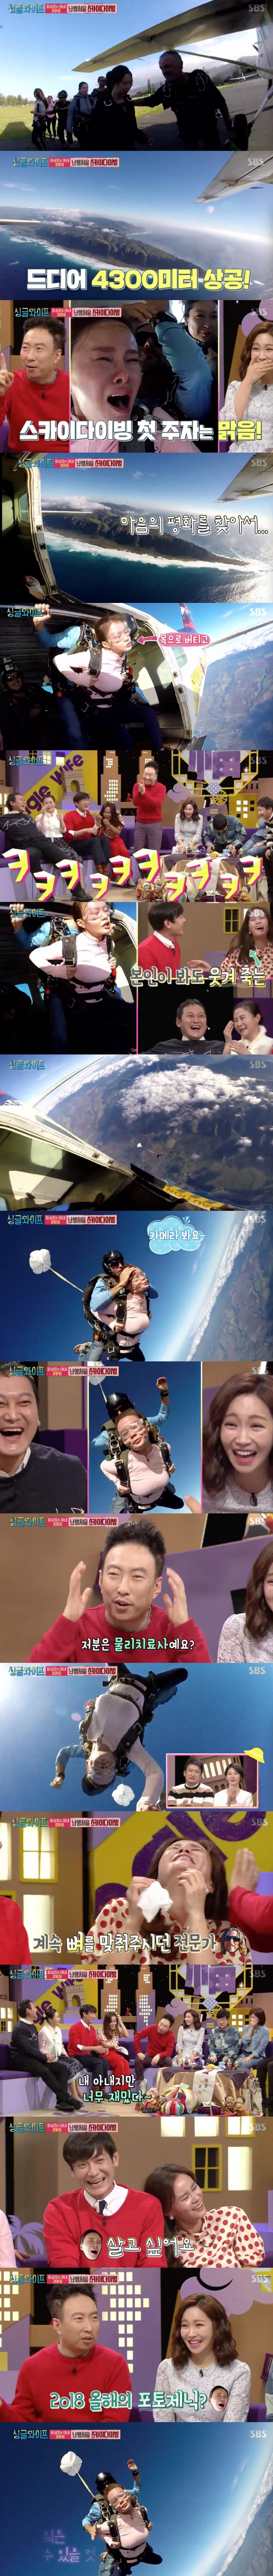 SBS 싱글와이프 시즌2 방송 캡쳐